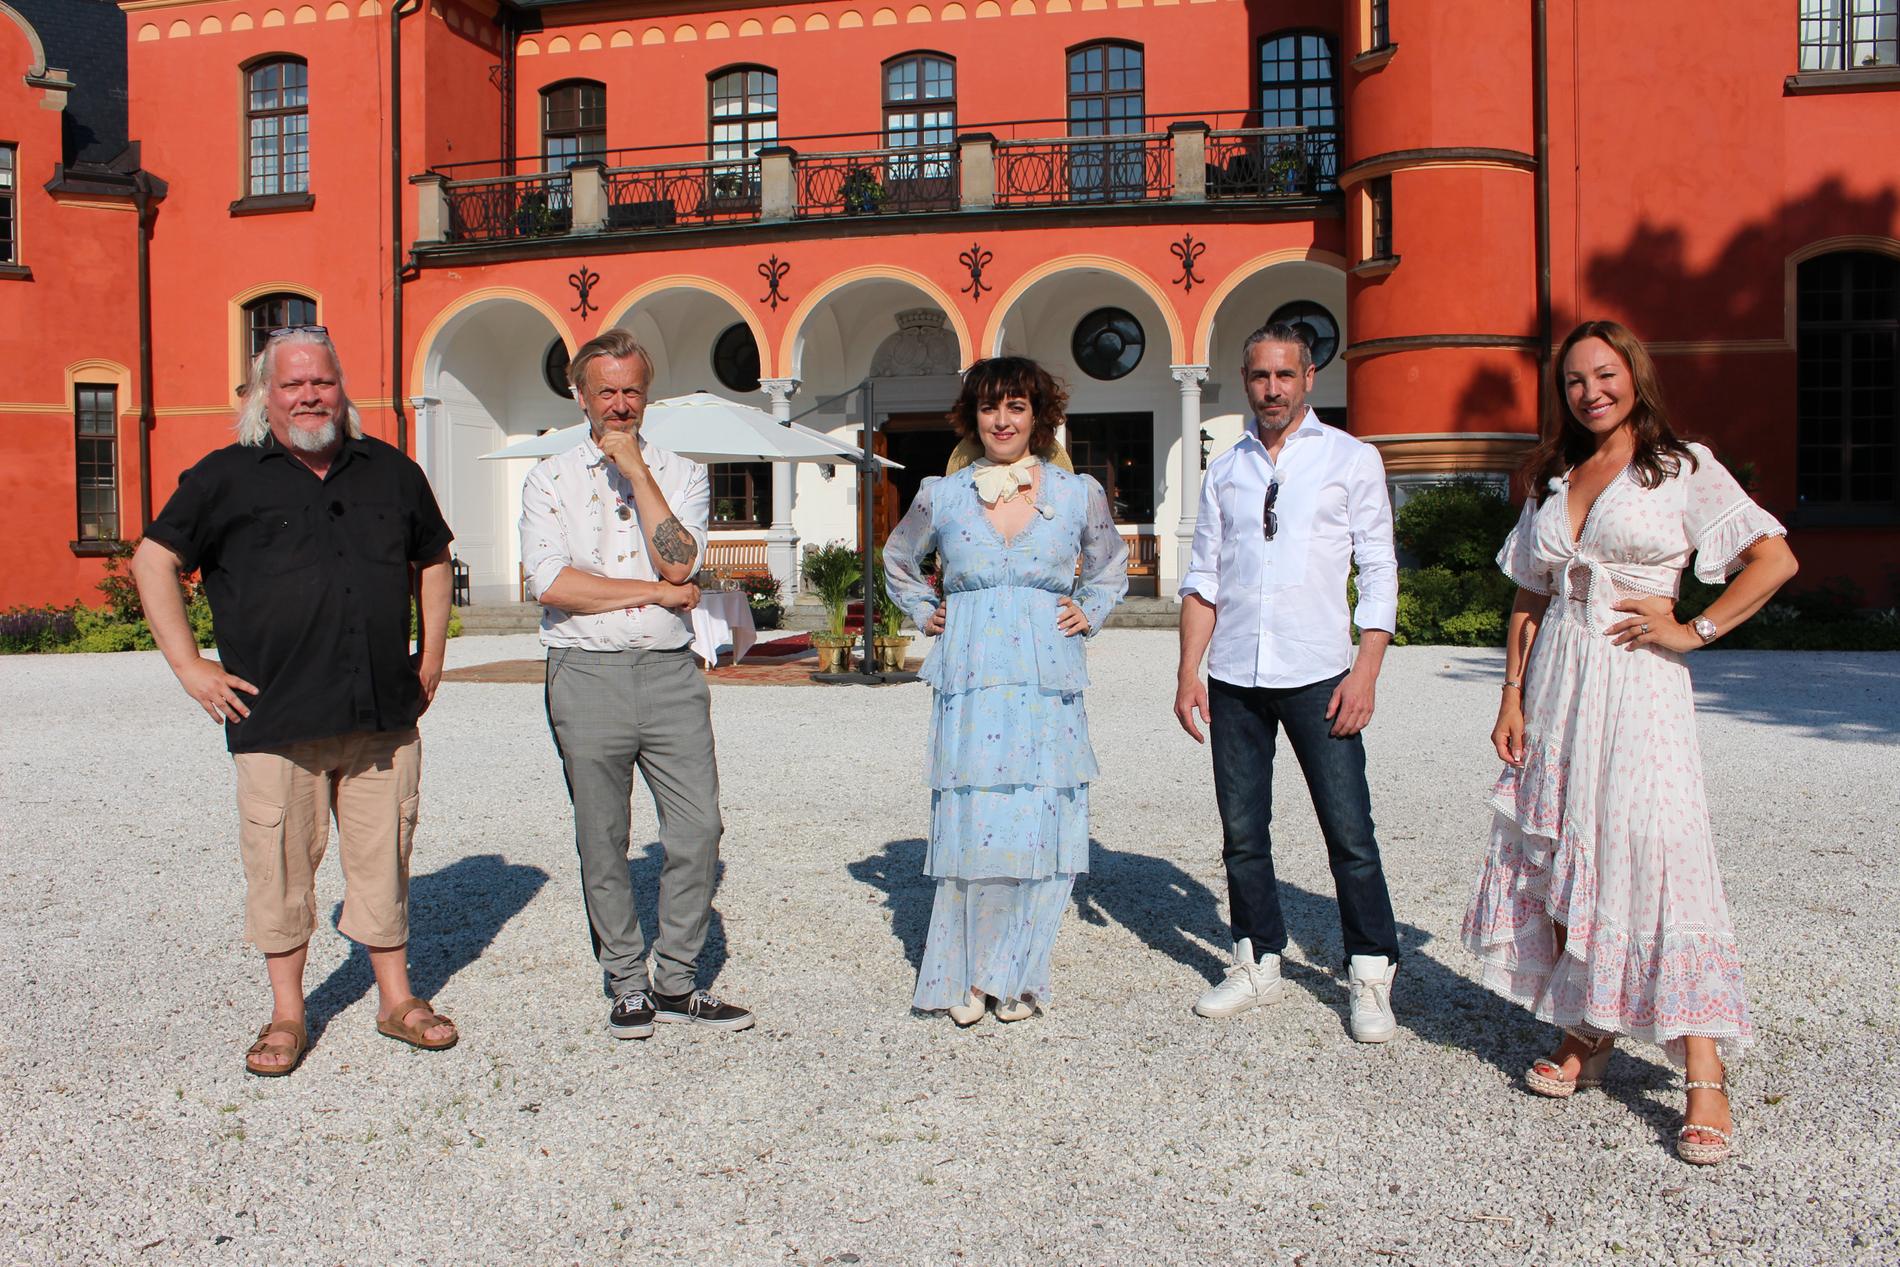 Från vänster: Kjell Wilhelmsen, Ernst Billgren, Shima Niavarani, Ola Rapace och Charlotte Perrelli. Pressbild.